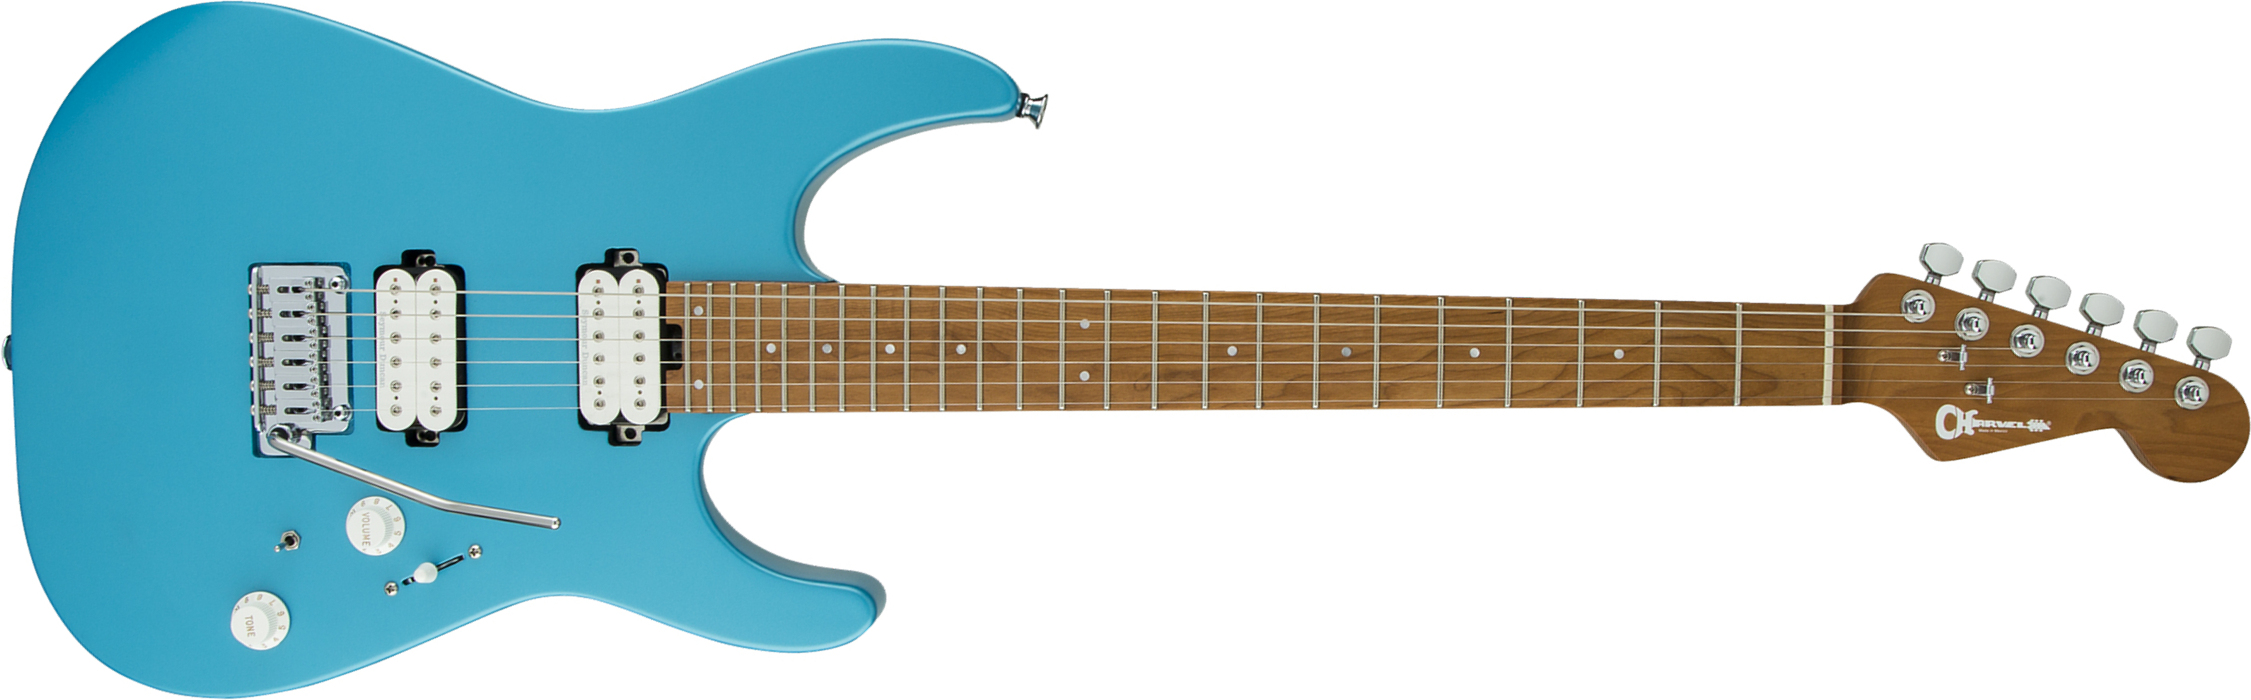 Charvel Pro-mod Dk24 Hh 2pt Cm Seymour Duncan Trem Mn - Matte Blue Frost - Str shape electric guitar - Main picture